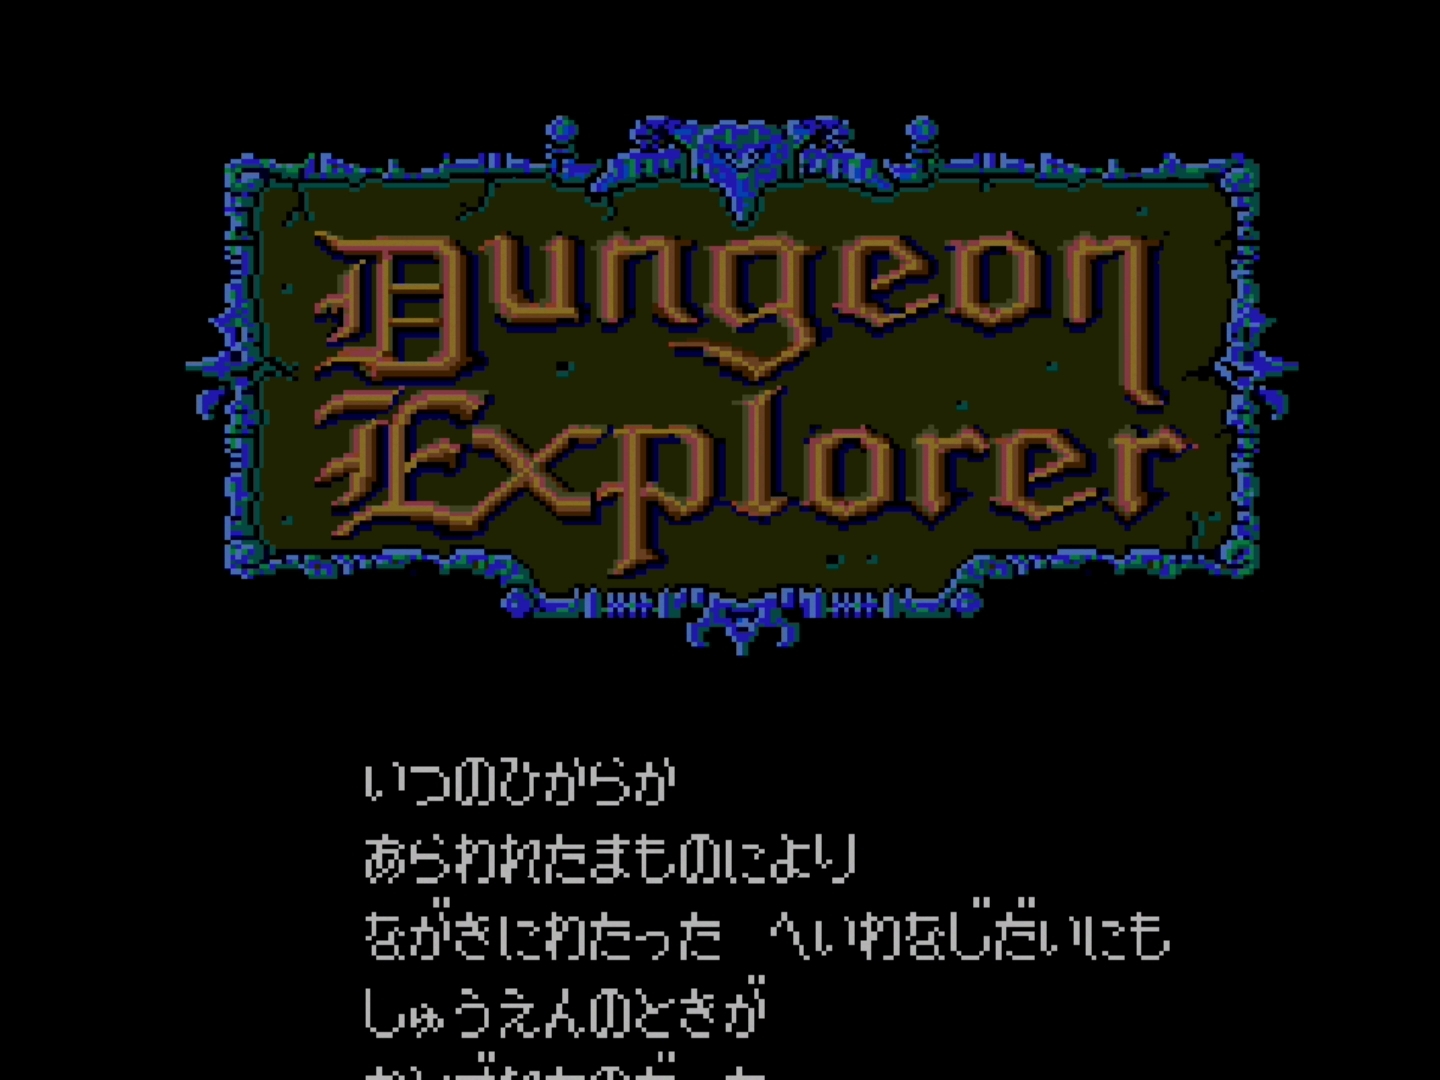 特集 Pcエンジン Mini全タイトルレビュー ダンジョンエクスプローラー Dungeon Explorer Game Watch